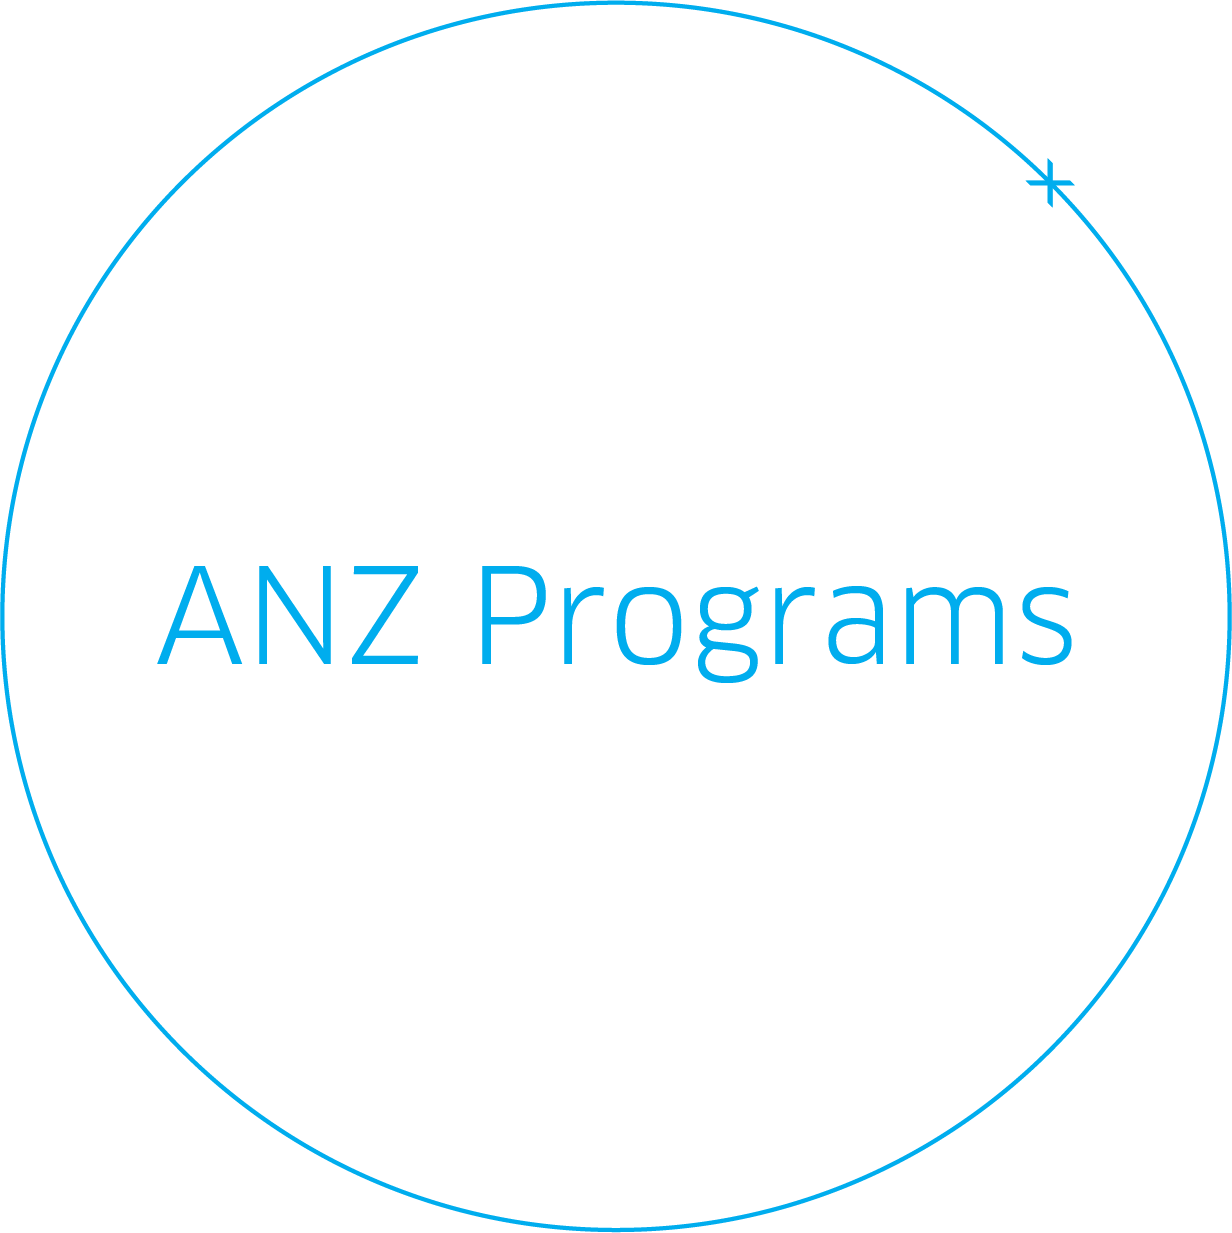 ANZ Programs